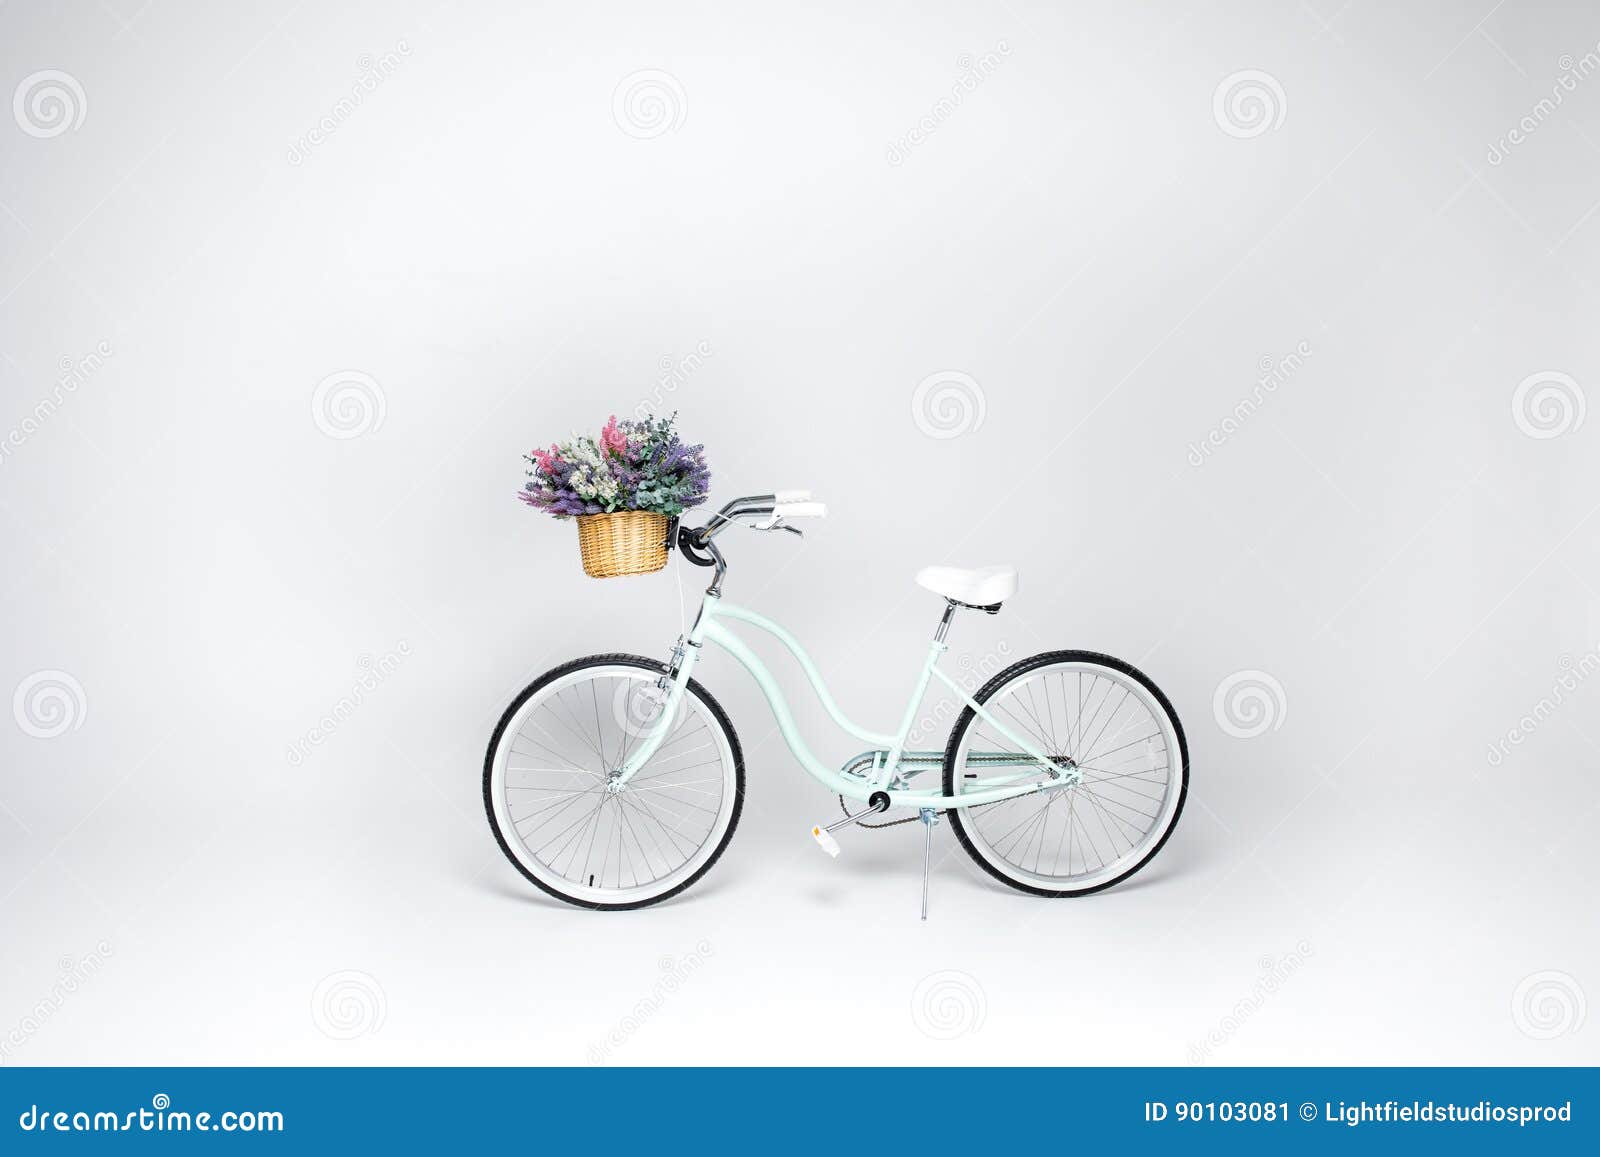 fahrrad mit blumenkorb